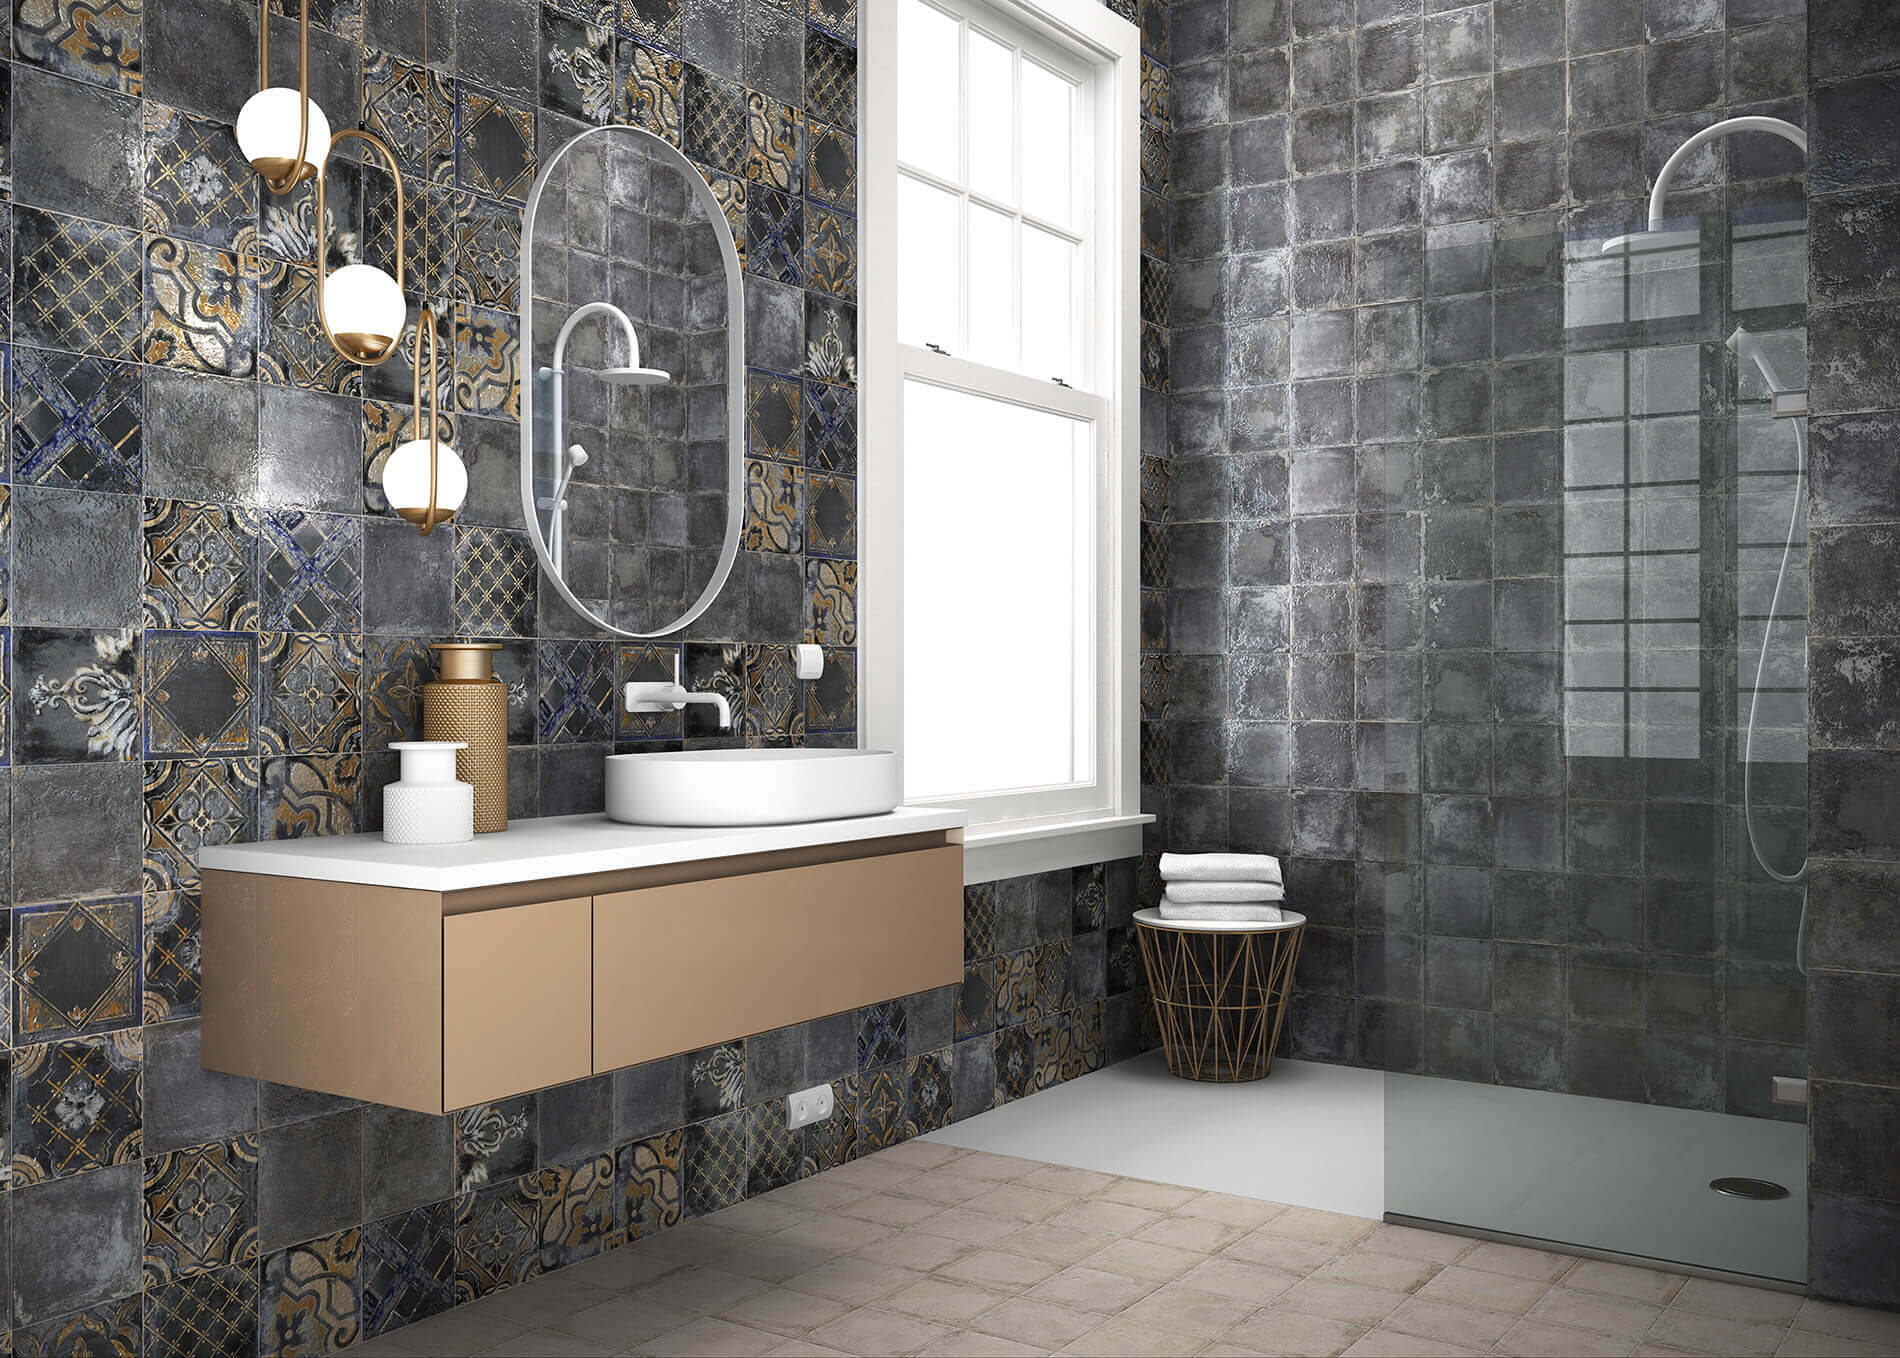 Зеркало для ванной комнаты: сочетание практичности и декора